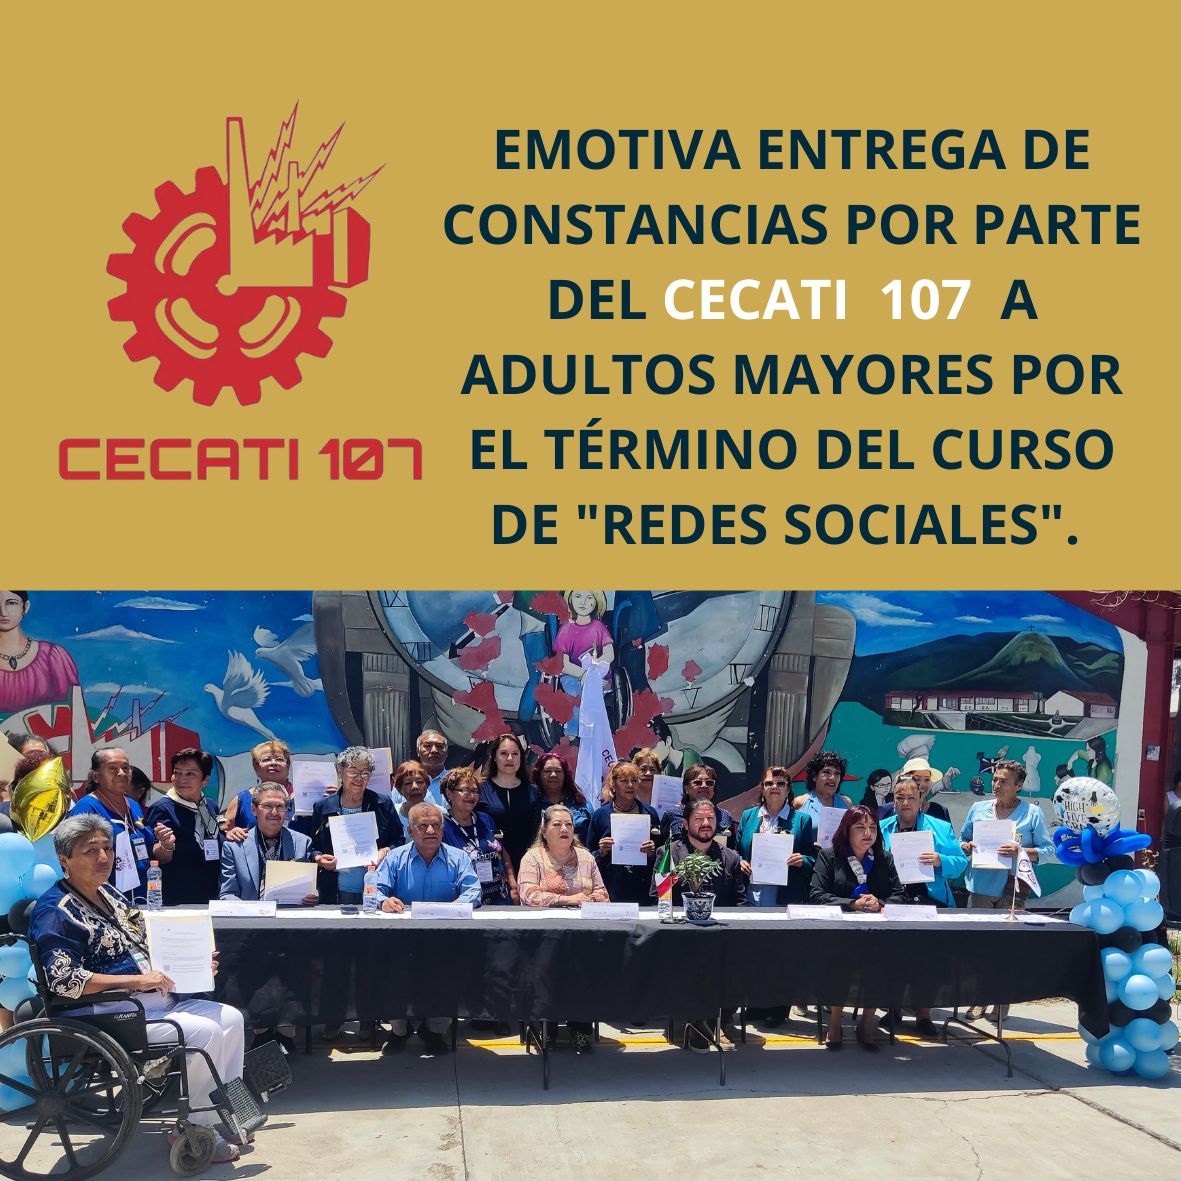 Emotiva entrega de Constancias por parte del CECATI 107 a adultos mayores por el término del curso “Redes Sociales”.